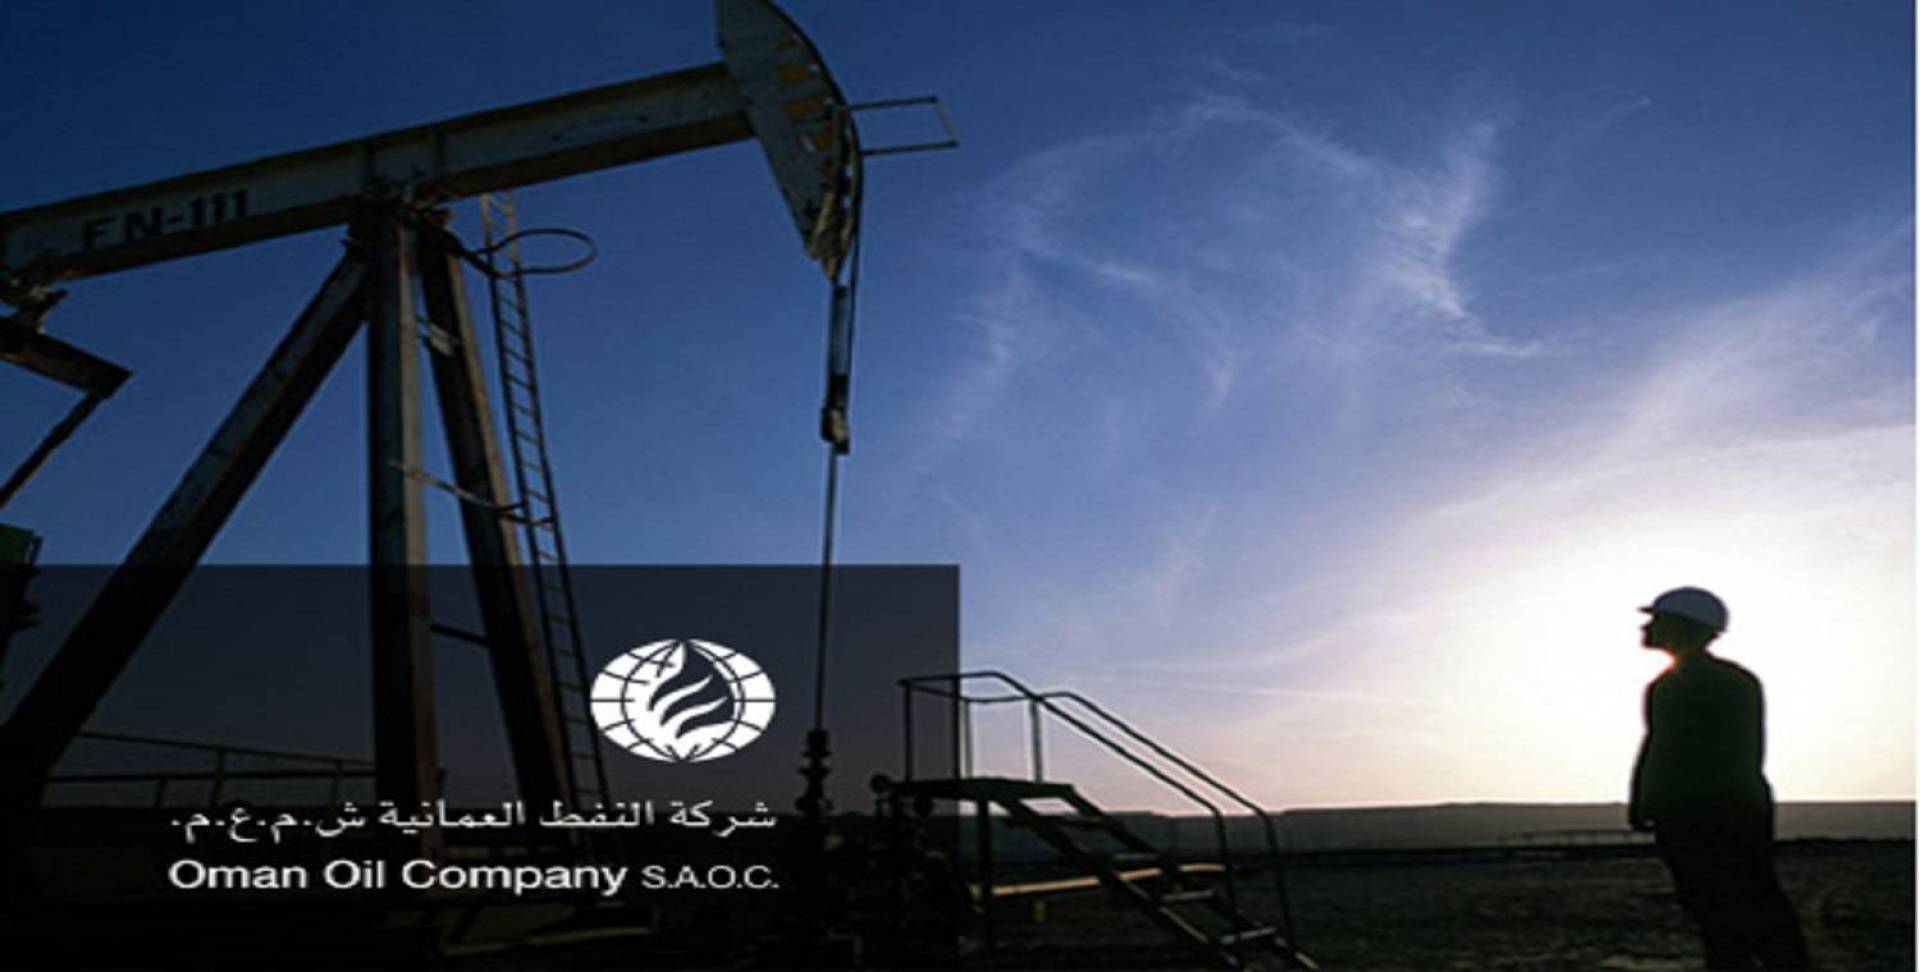 النفط العمانية ثاني شركة نفط خليجية تتهيأ للطرح بعد أرامكو